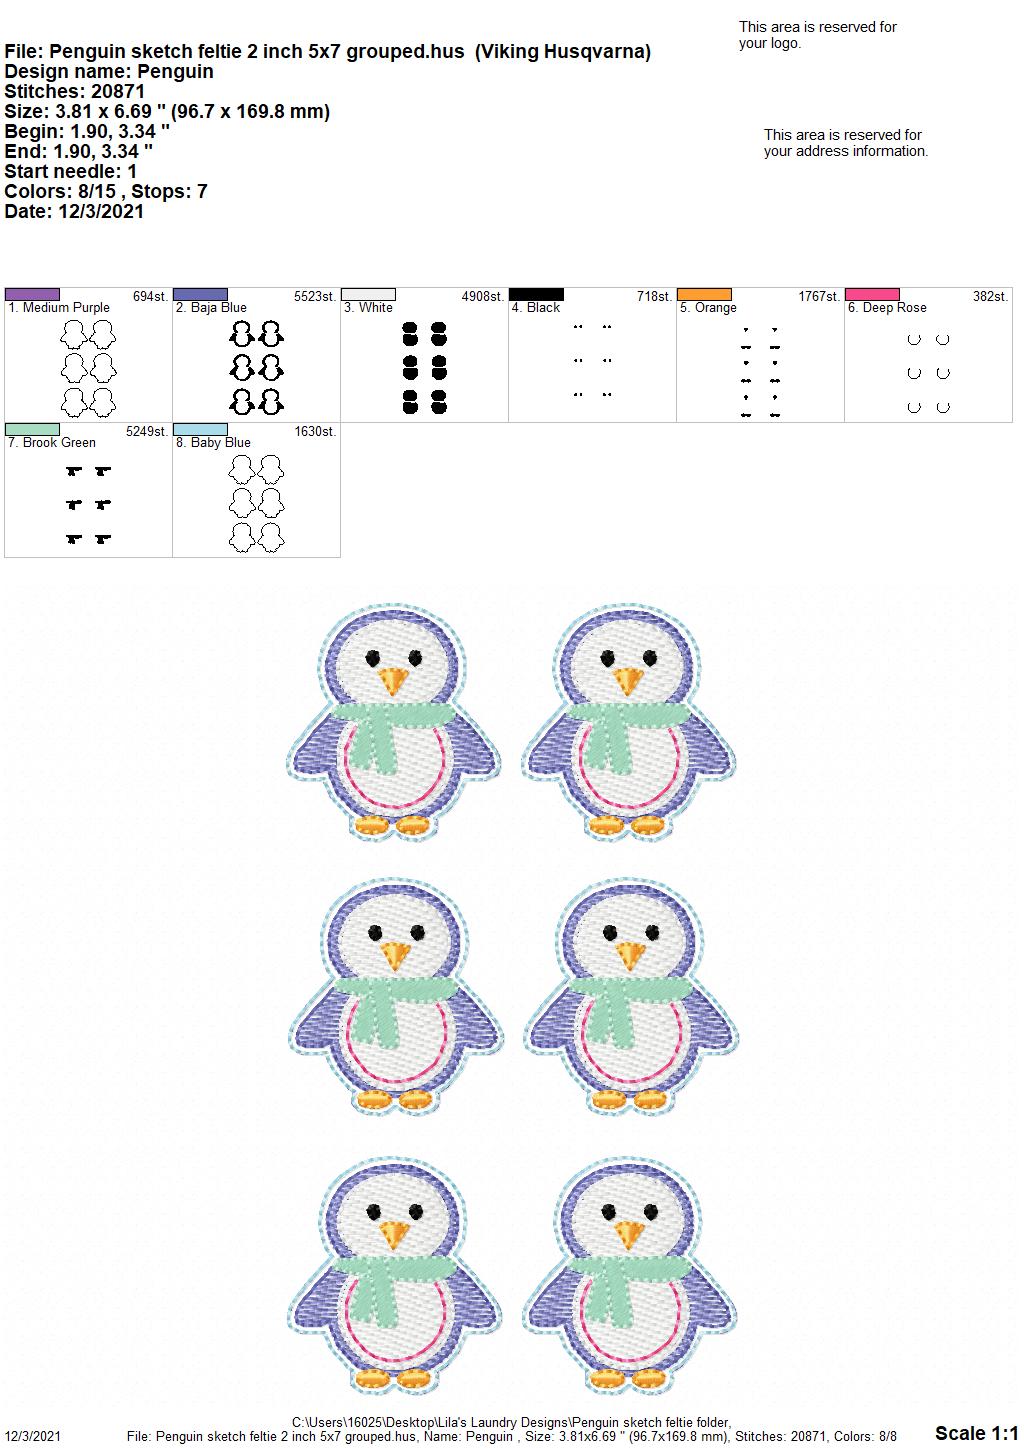 Penguin Sketch Feltie - Digital Embroidery Design